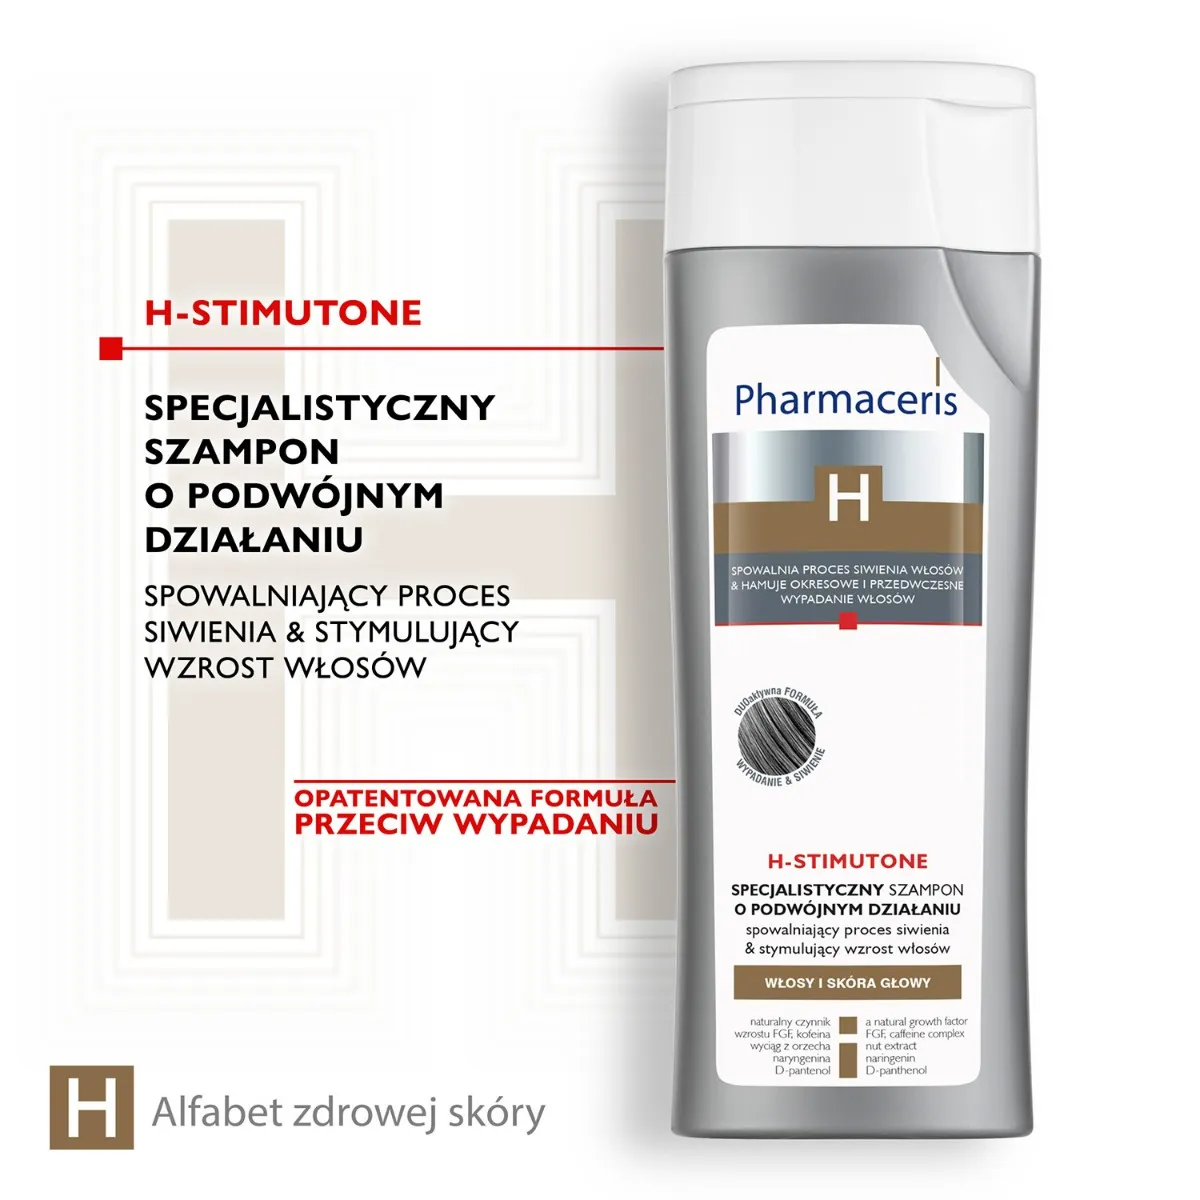 Pharmaceris H Stimutone, szampon spowalniający proces siwienia i stymulujący wzrost włosów, 250 ml 